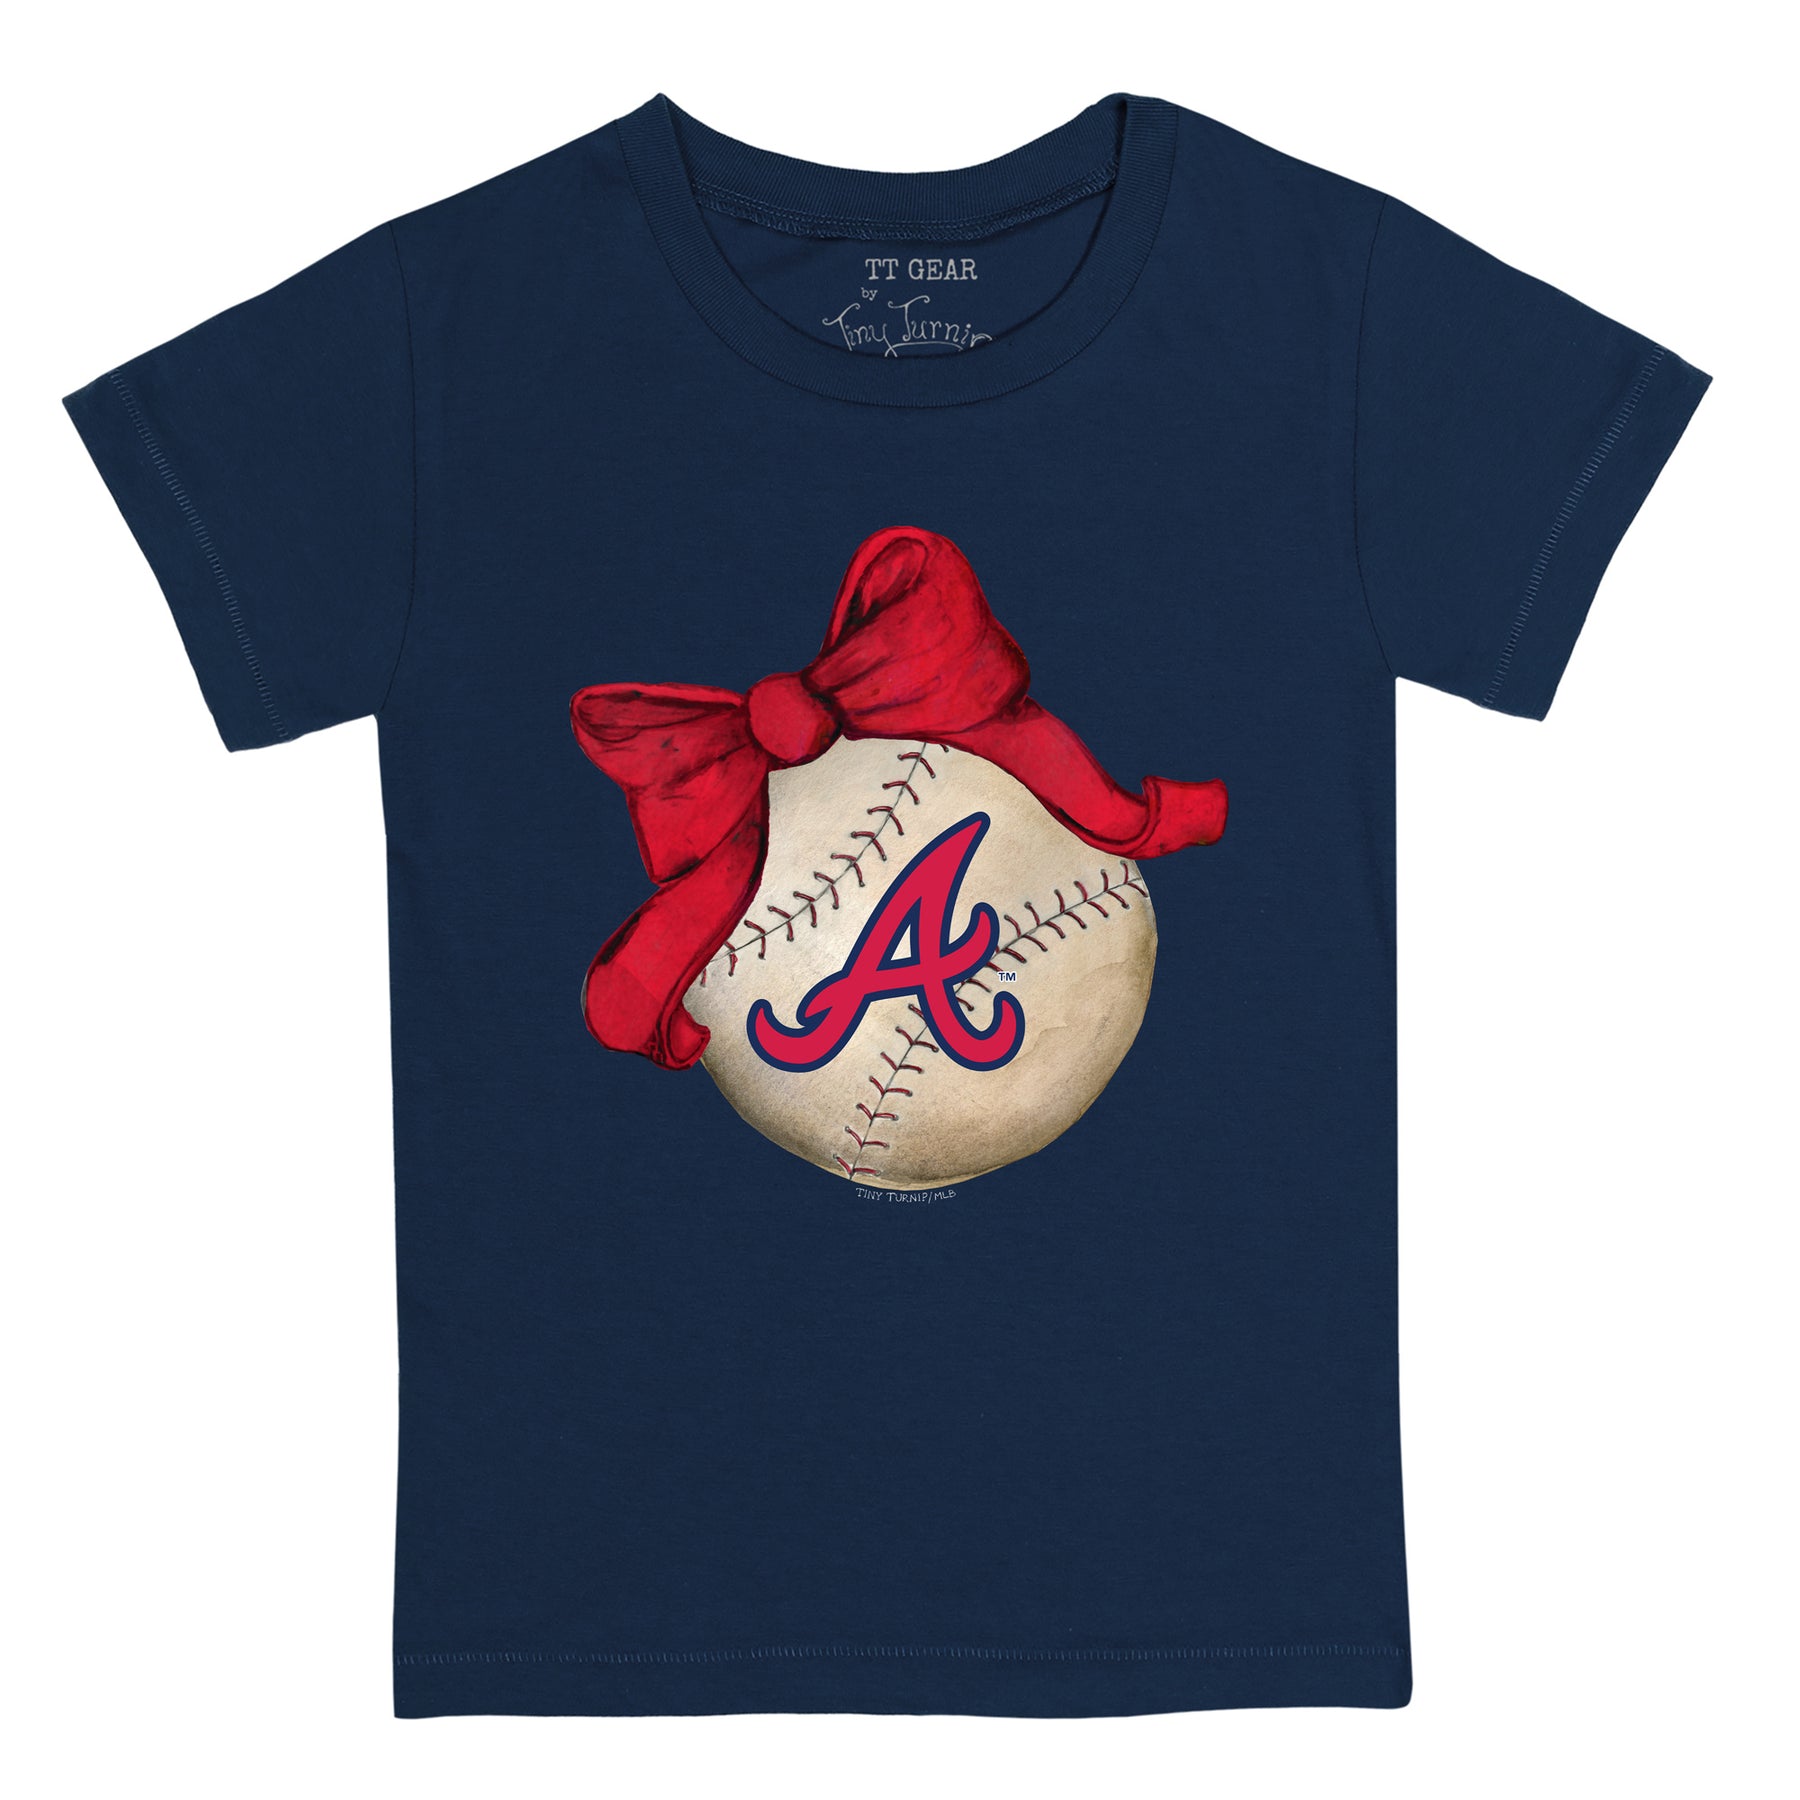 Atlanta Braves T-Shirt, Braves Shirts, Braves Baseball Shirts